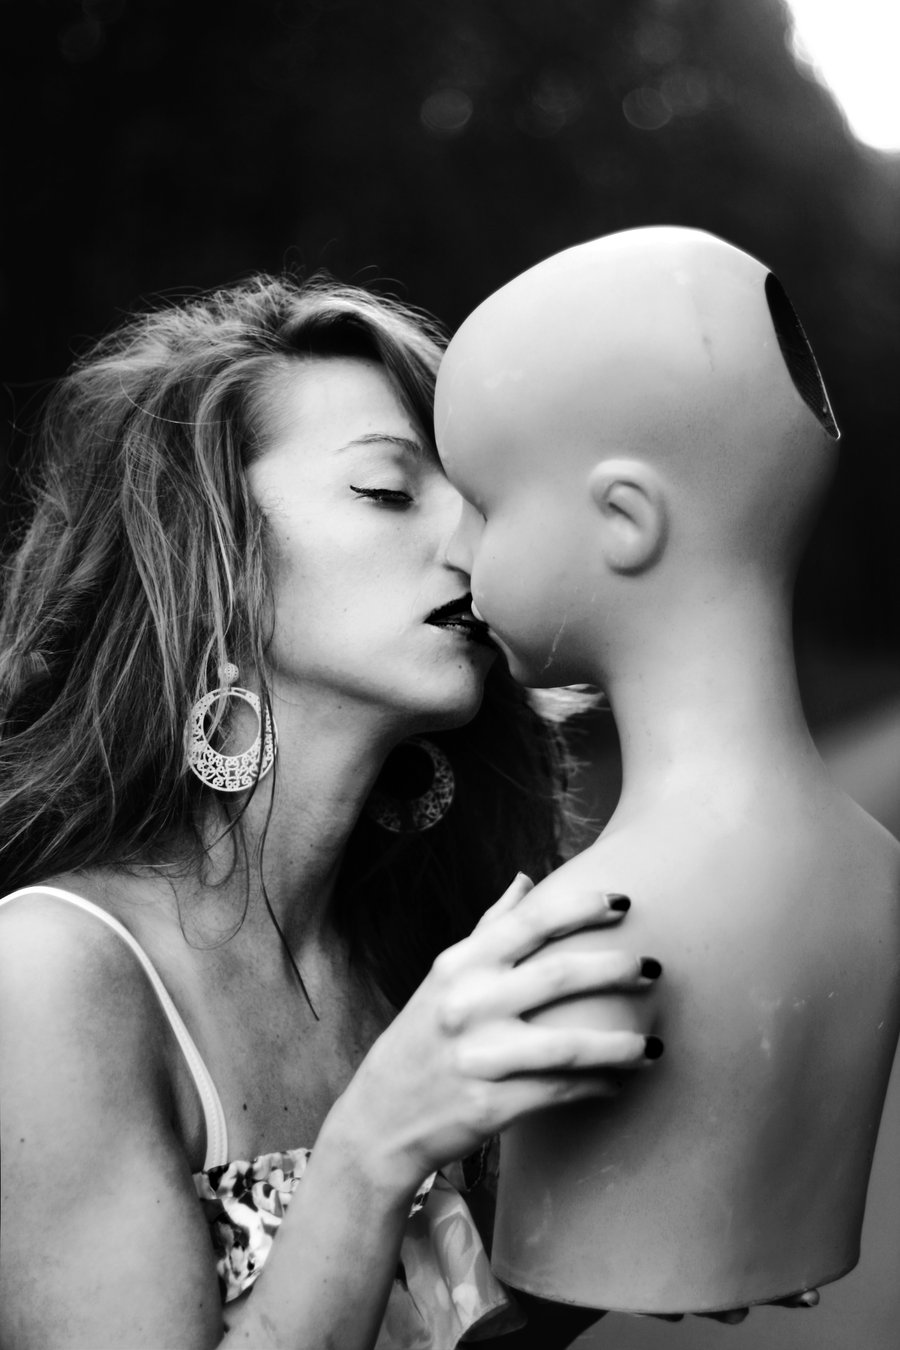 mannequin love